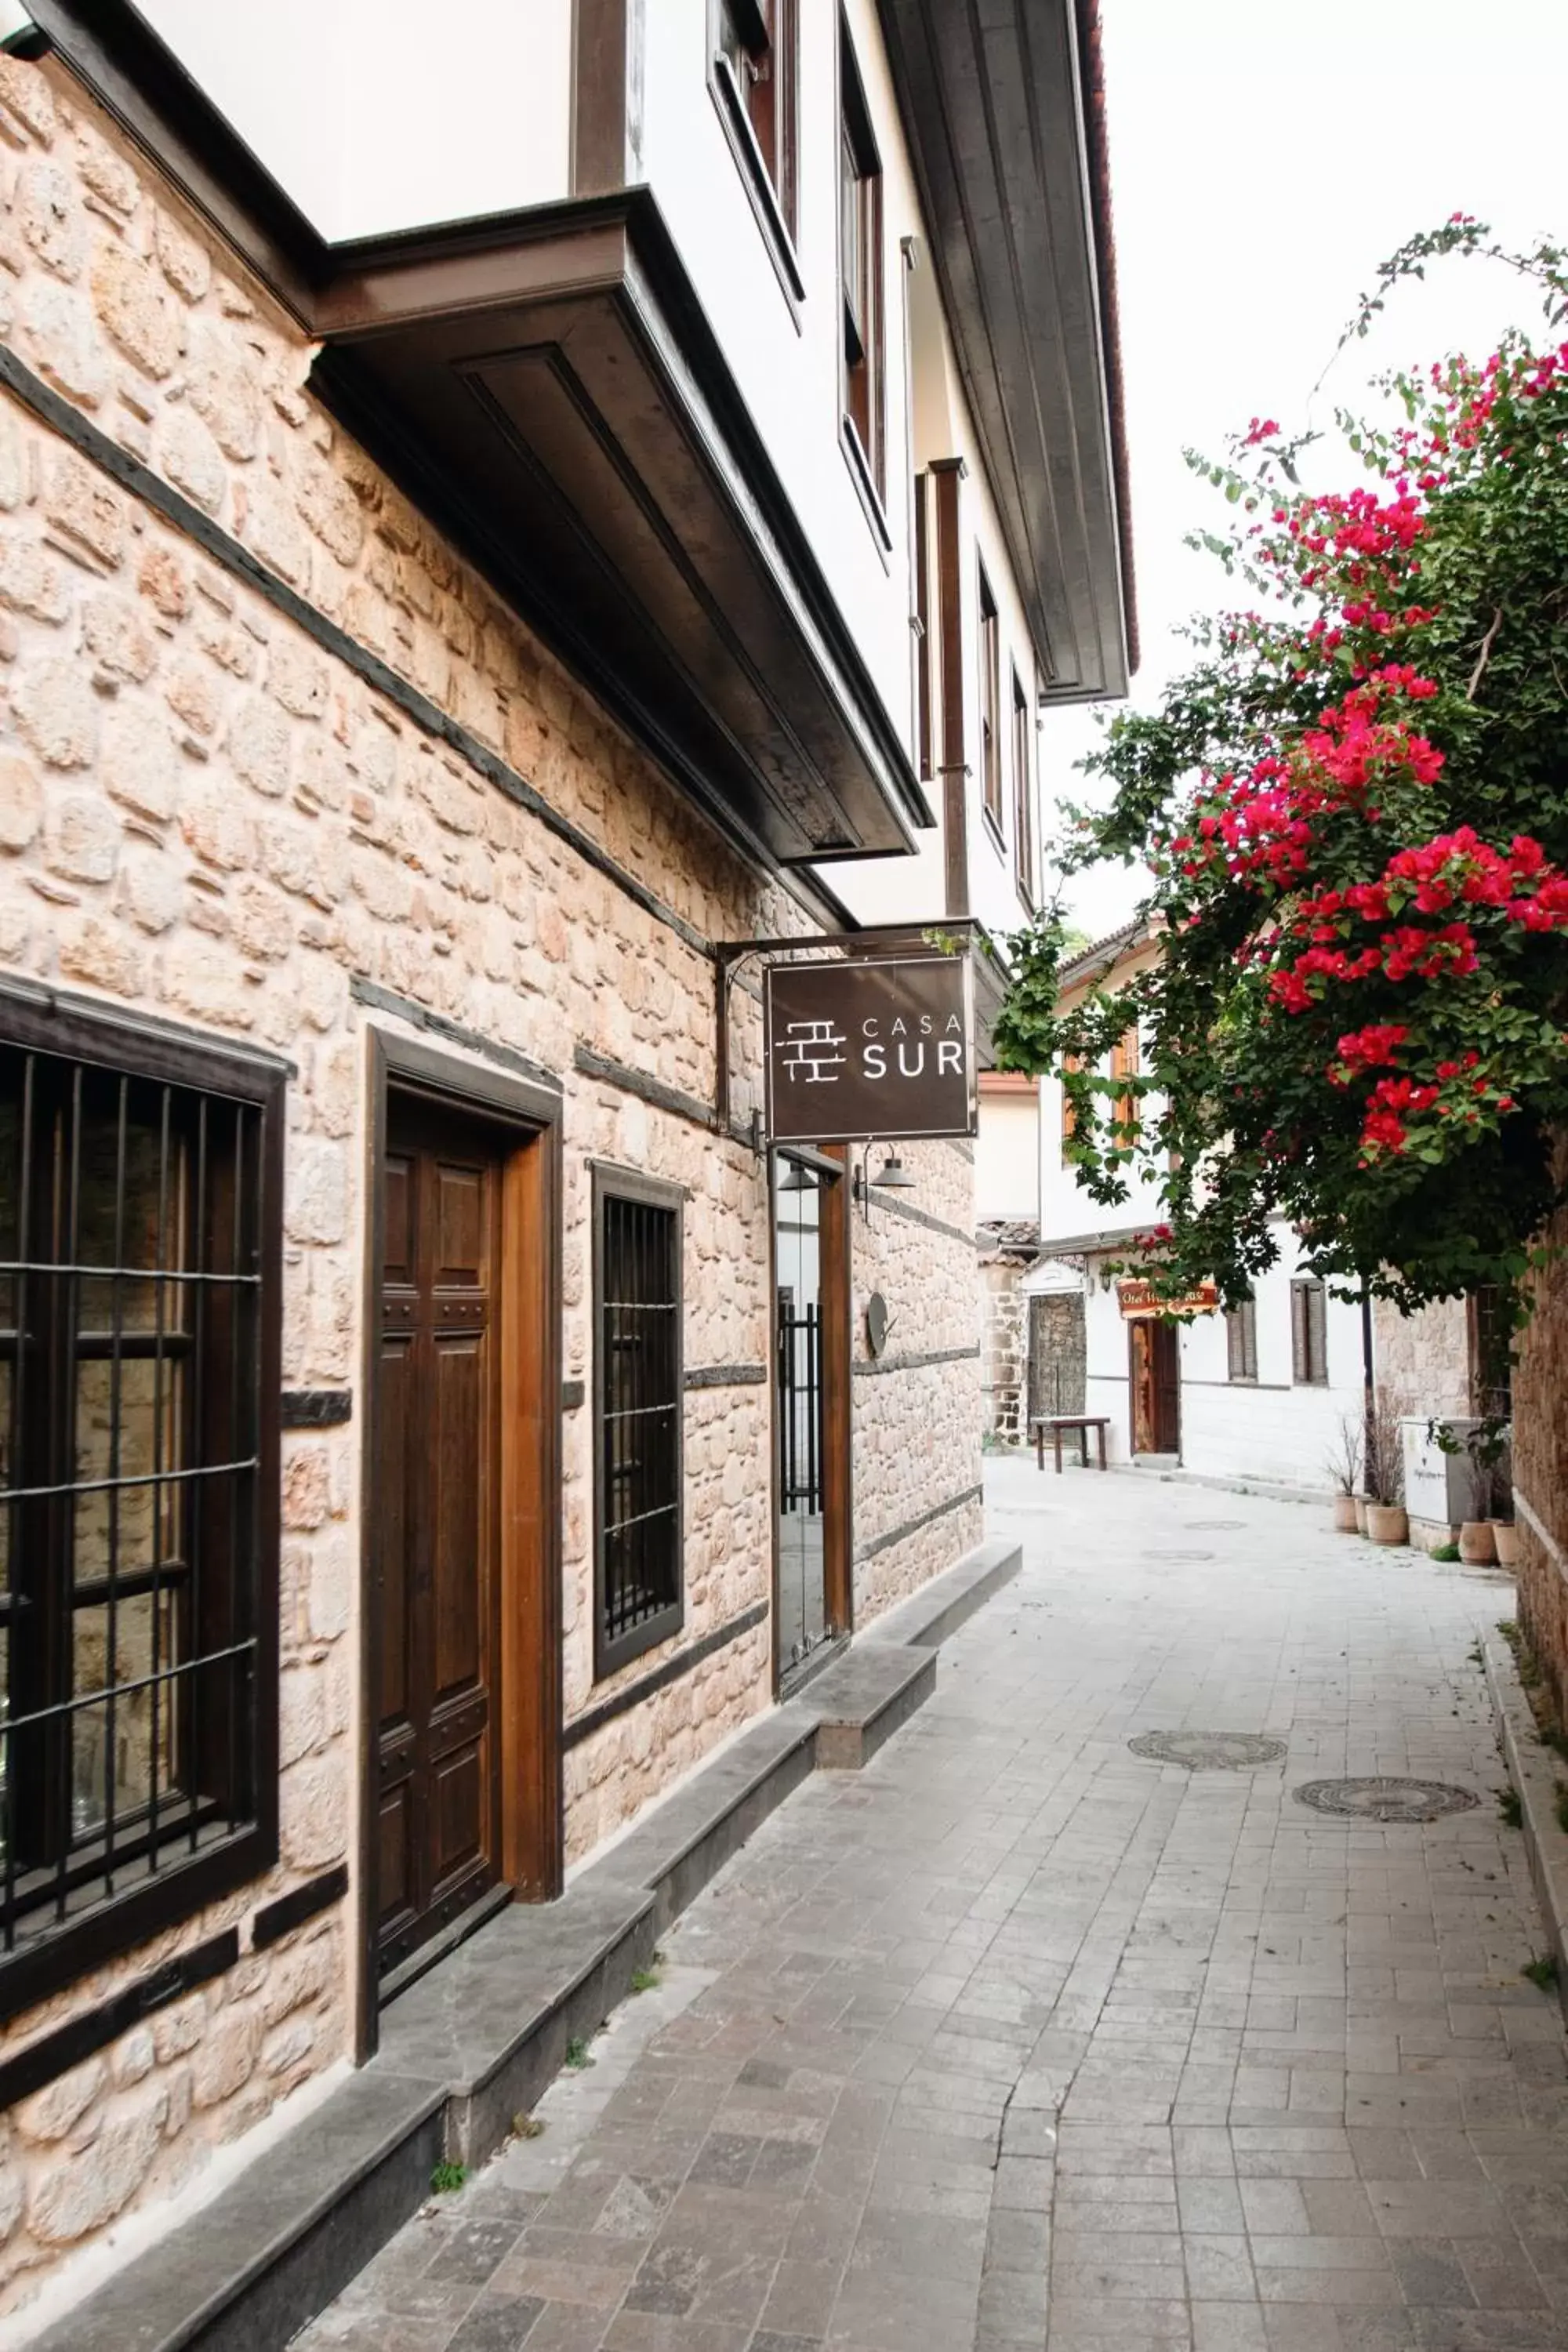 Facade/entrance in Casa Sur Antalya